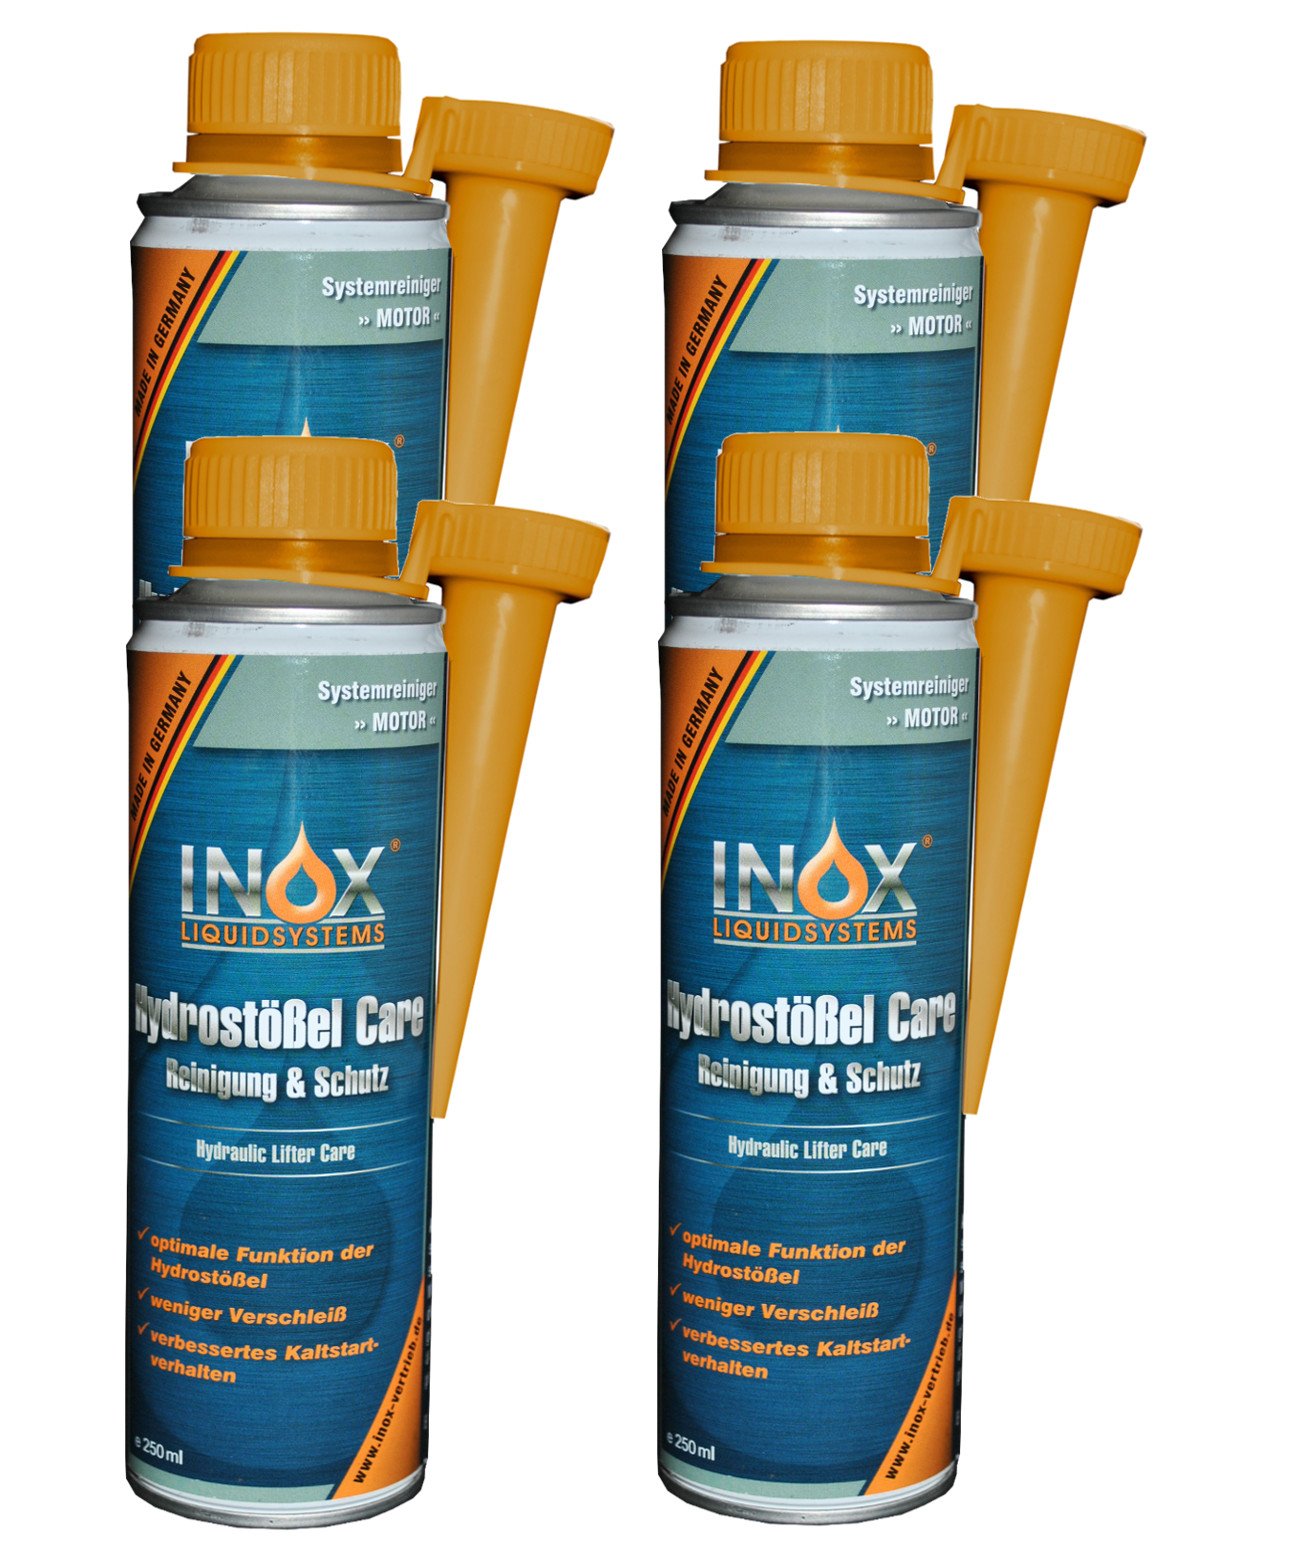 INOX® Hydrostößel Care Reinigung, 4 x 250 ml - Reiniger & Schutz Additiv für alle Benzin- und Dieselmotoren, weniger Verschleiß und verbessertes Kaltstartverhalten von INOX-LIQUIDSYSTEMS